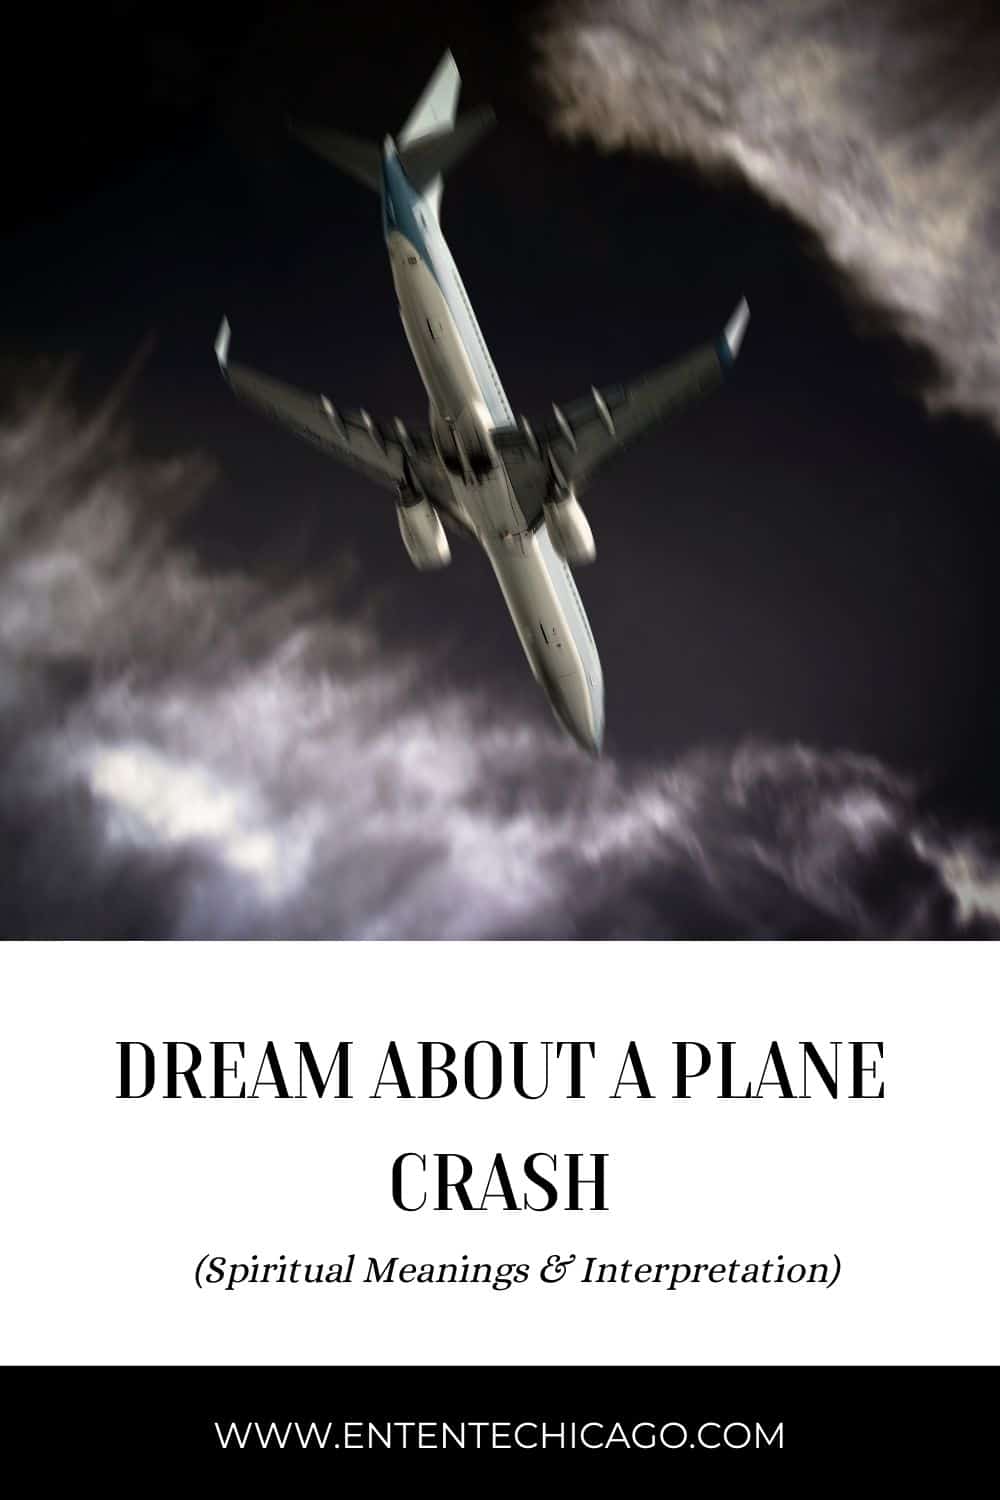  घर में विमान दुर्घटना का सपना (सौभाग्य की व्याख्या)